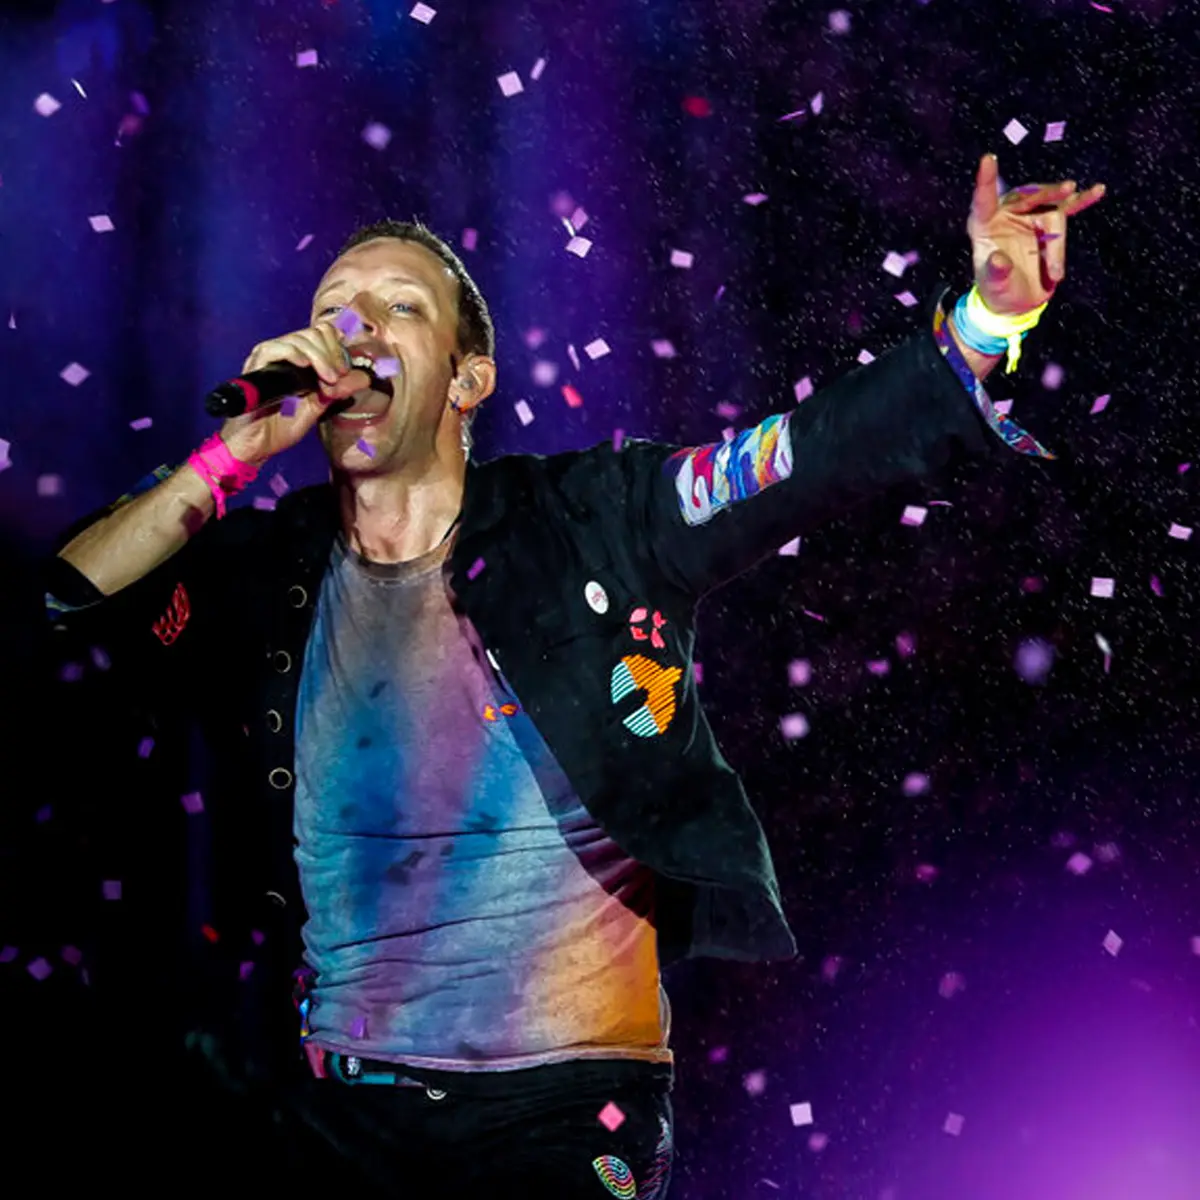 Coldplay - Fix You (Rock In Rio 2011 - Legendado)